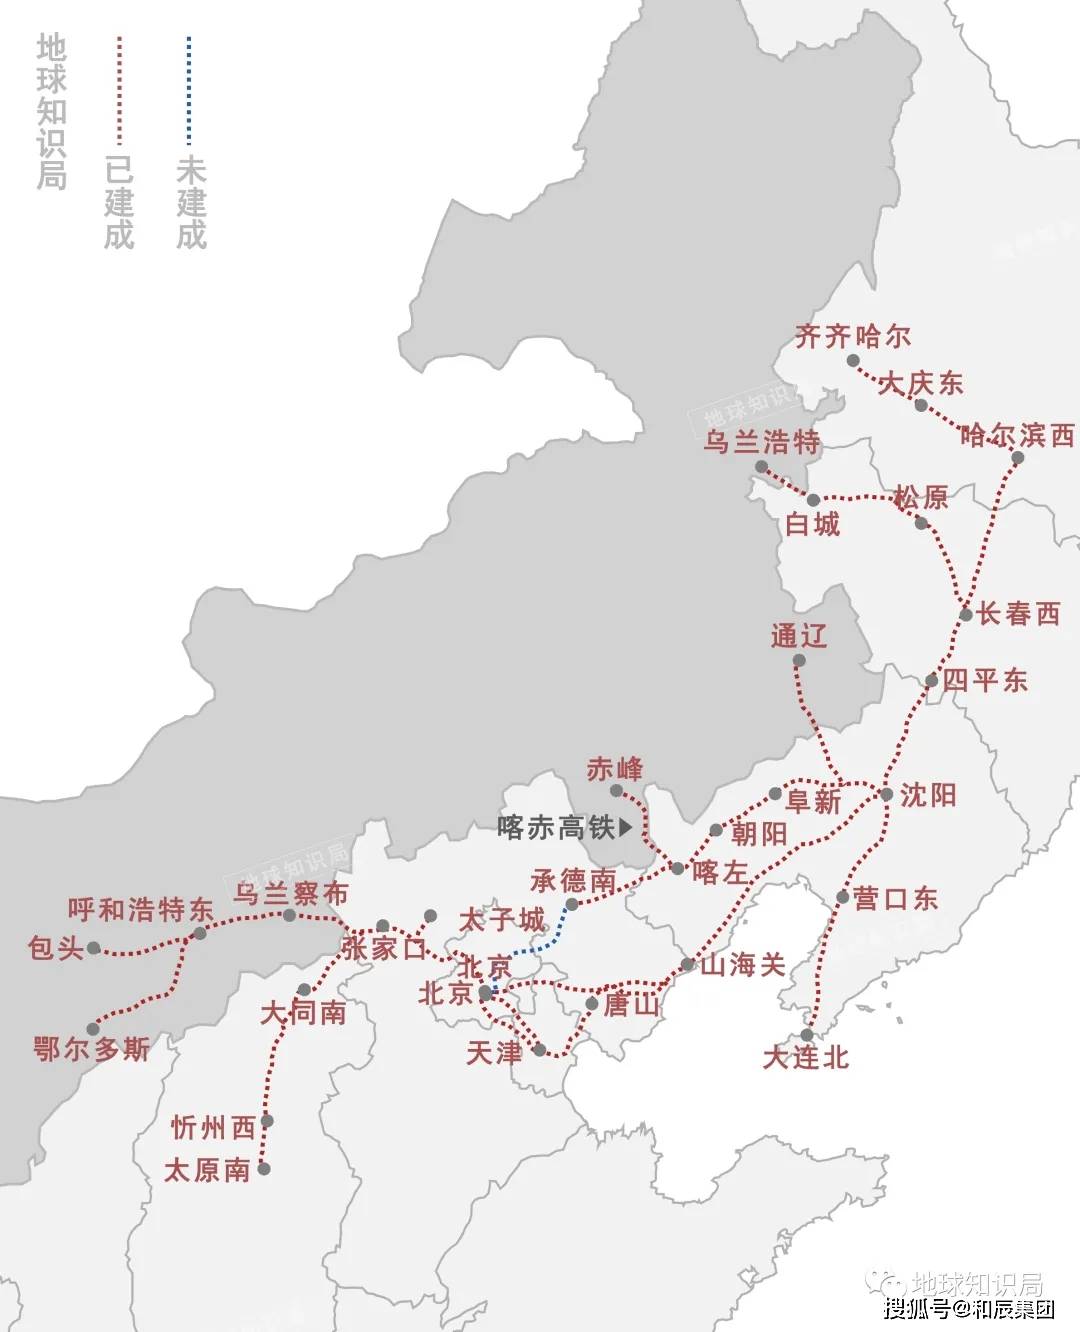 红淖三铁路线路图图片